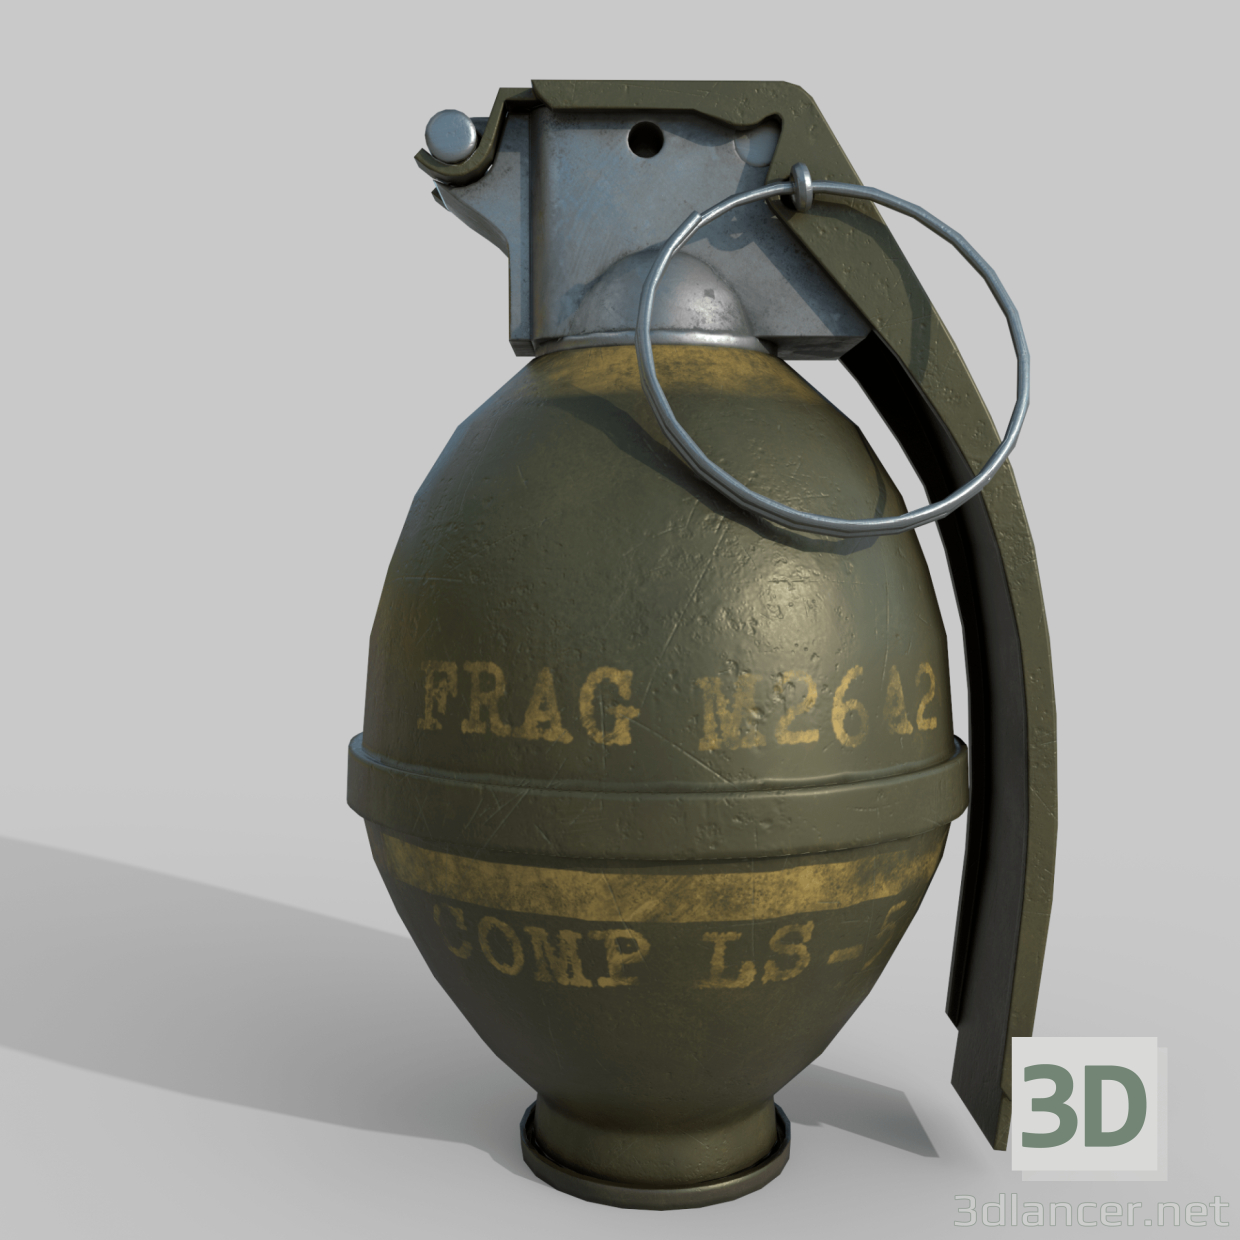 3D el bombası M26 modeli satın - render